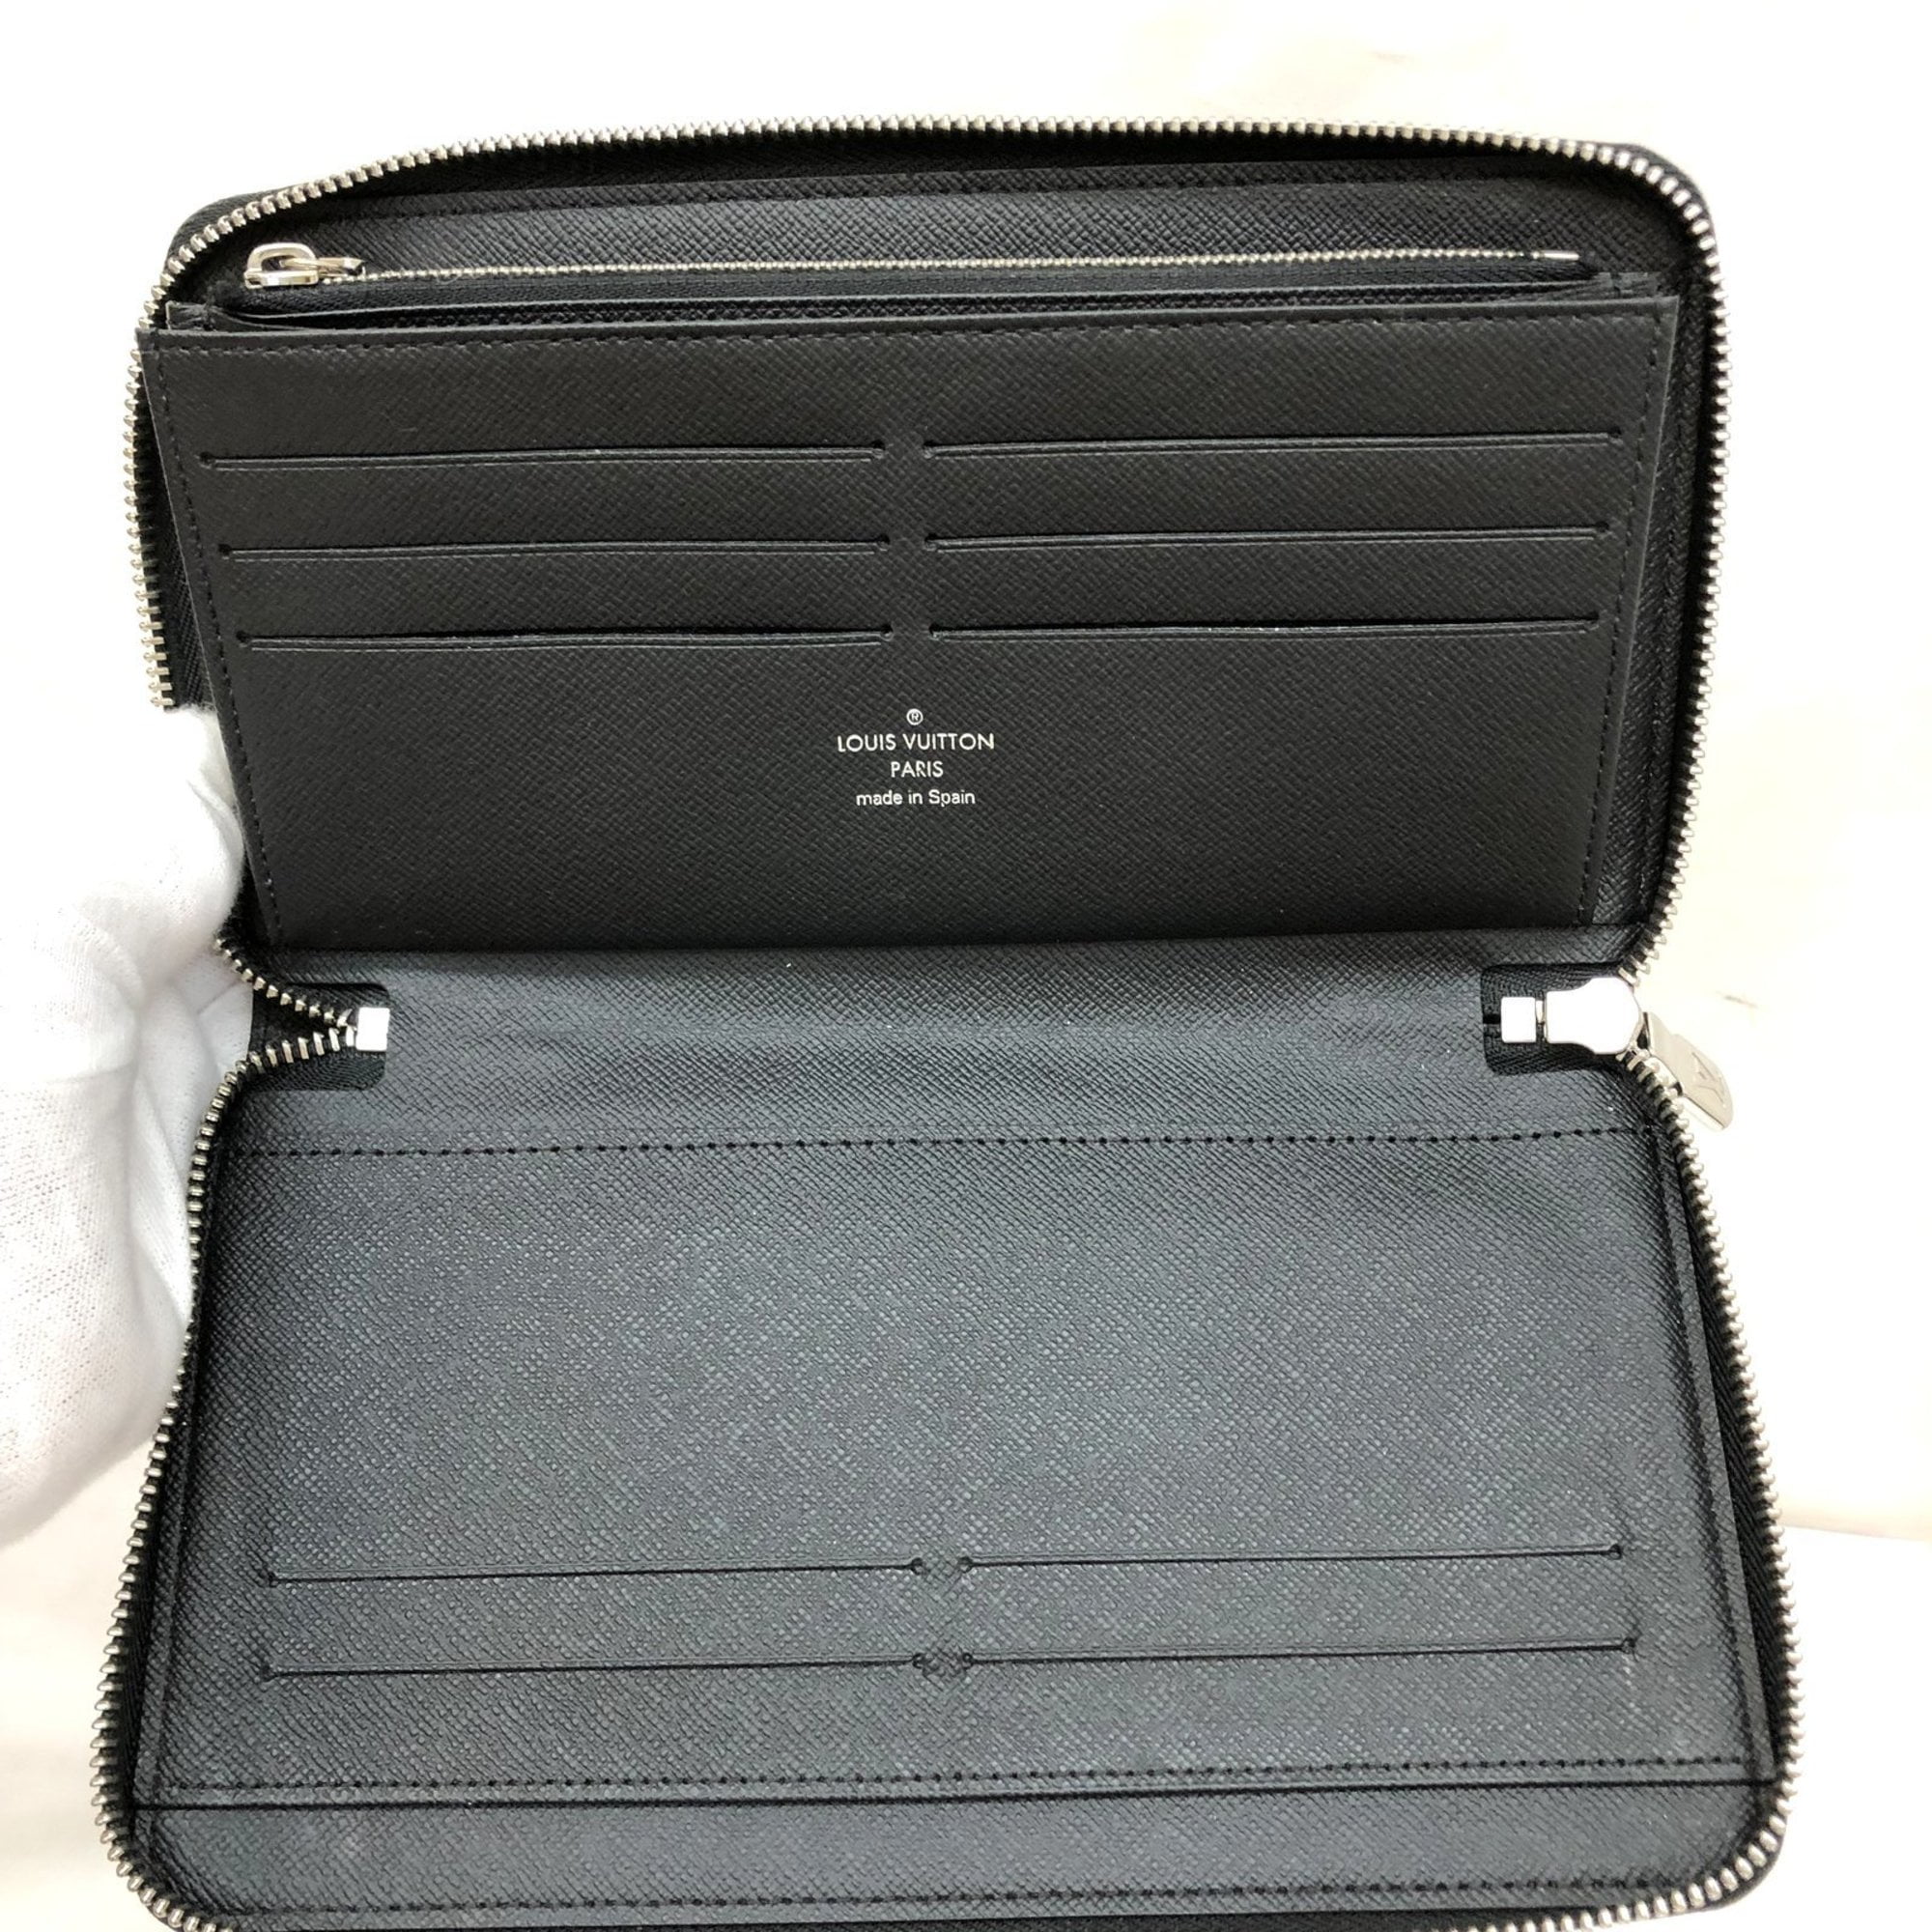 Authenticated used Louis Vuitton Louis Vuitton Zippy Aerogram Round Long Wallet Grain Leather M69831 Black, Adult Unisex, Size: (HxWxD): 10cm x 19cm x